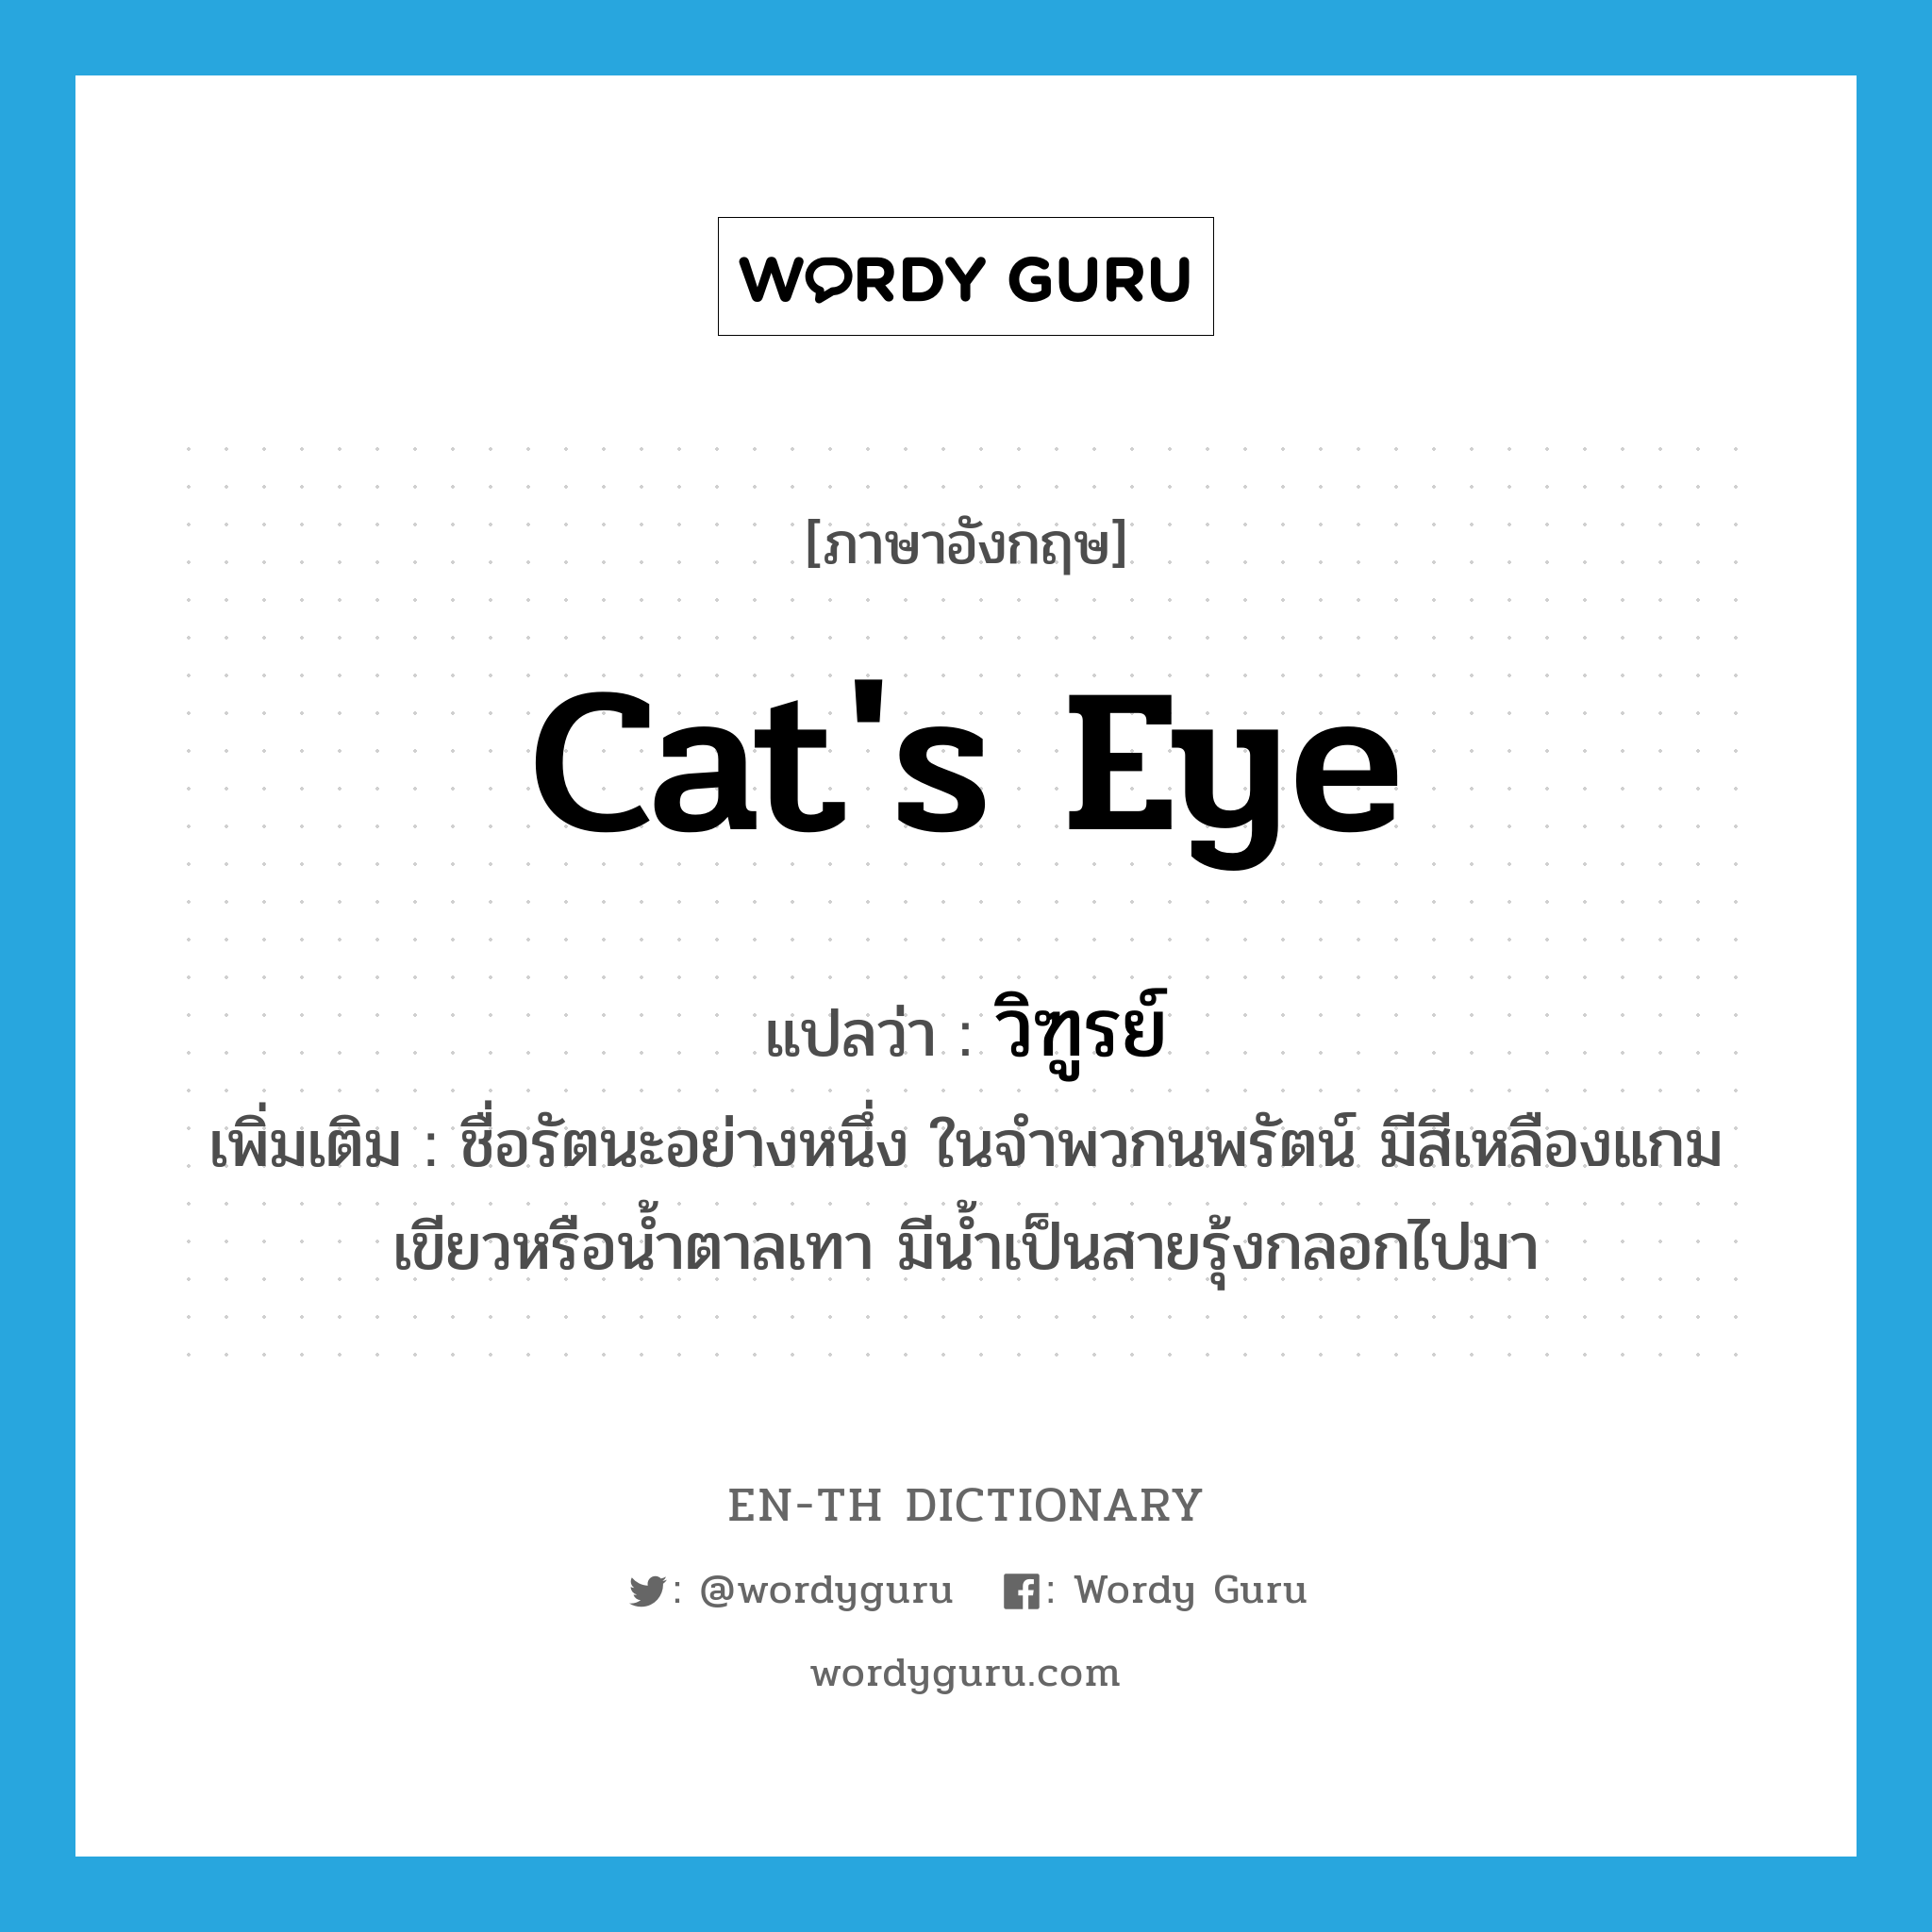 วิฑูรย์ ภาษาอังกฤษ?, คำศัพท์ภาษาอังกฤษ วิฑูรย์ แปลว่า cat's eye ประเภท N เพิ่มเติม ชื่อรัตนะอย่างหนึ่ง ในจำพวกนพรัตน์ มีสีเหลืองแกมเขียวหรือน้ำตาลเทา มีน้ำเป็นสายรุ้งกลอกไปมา หมวด N